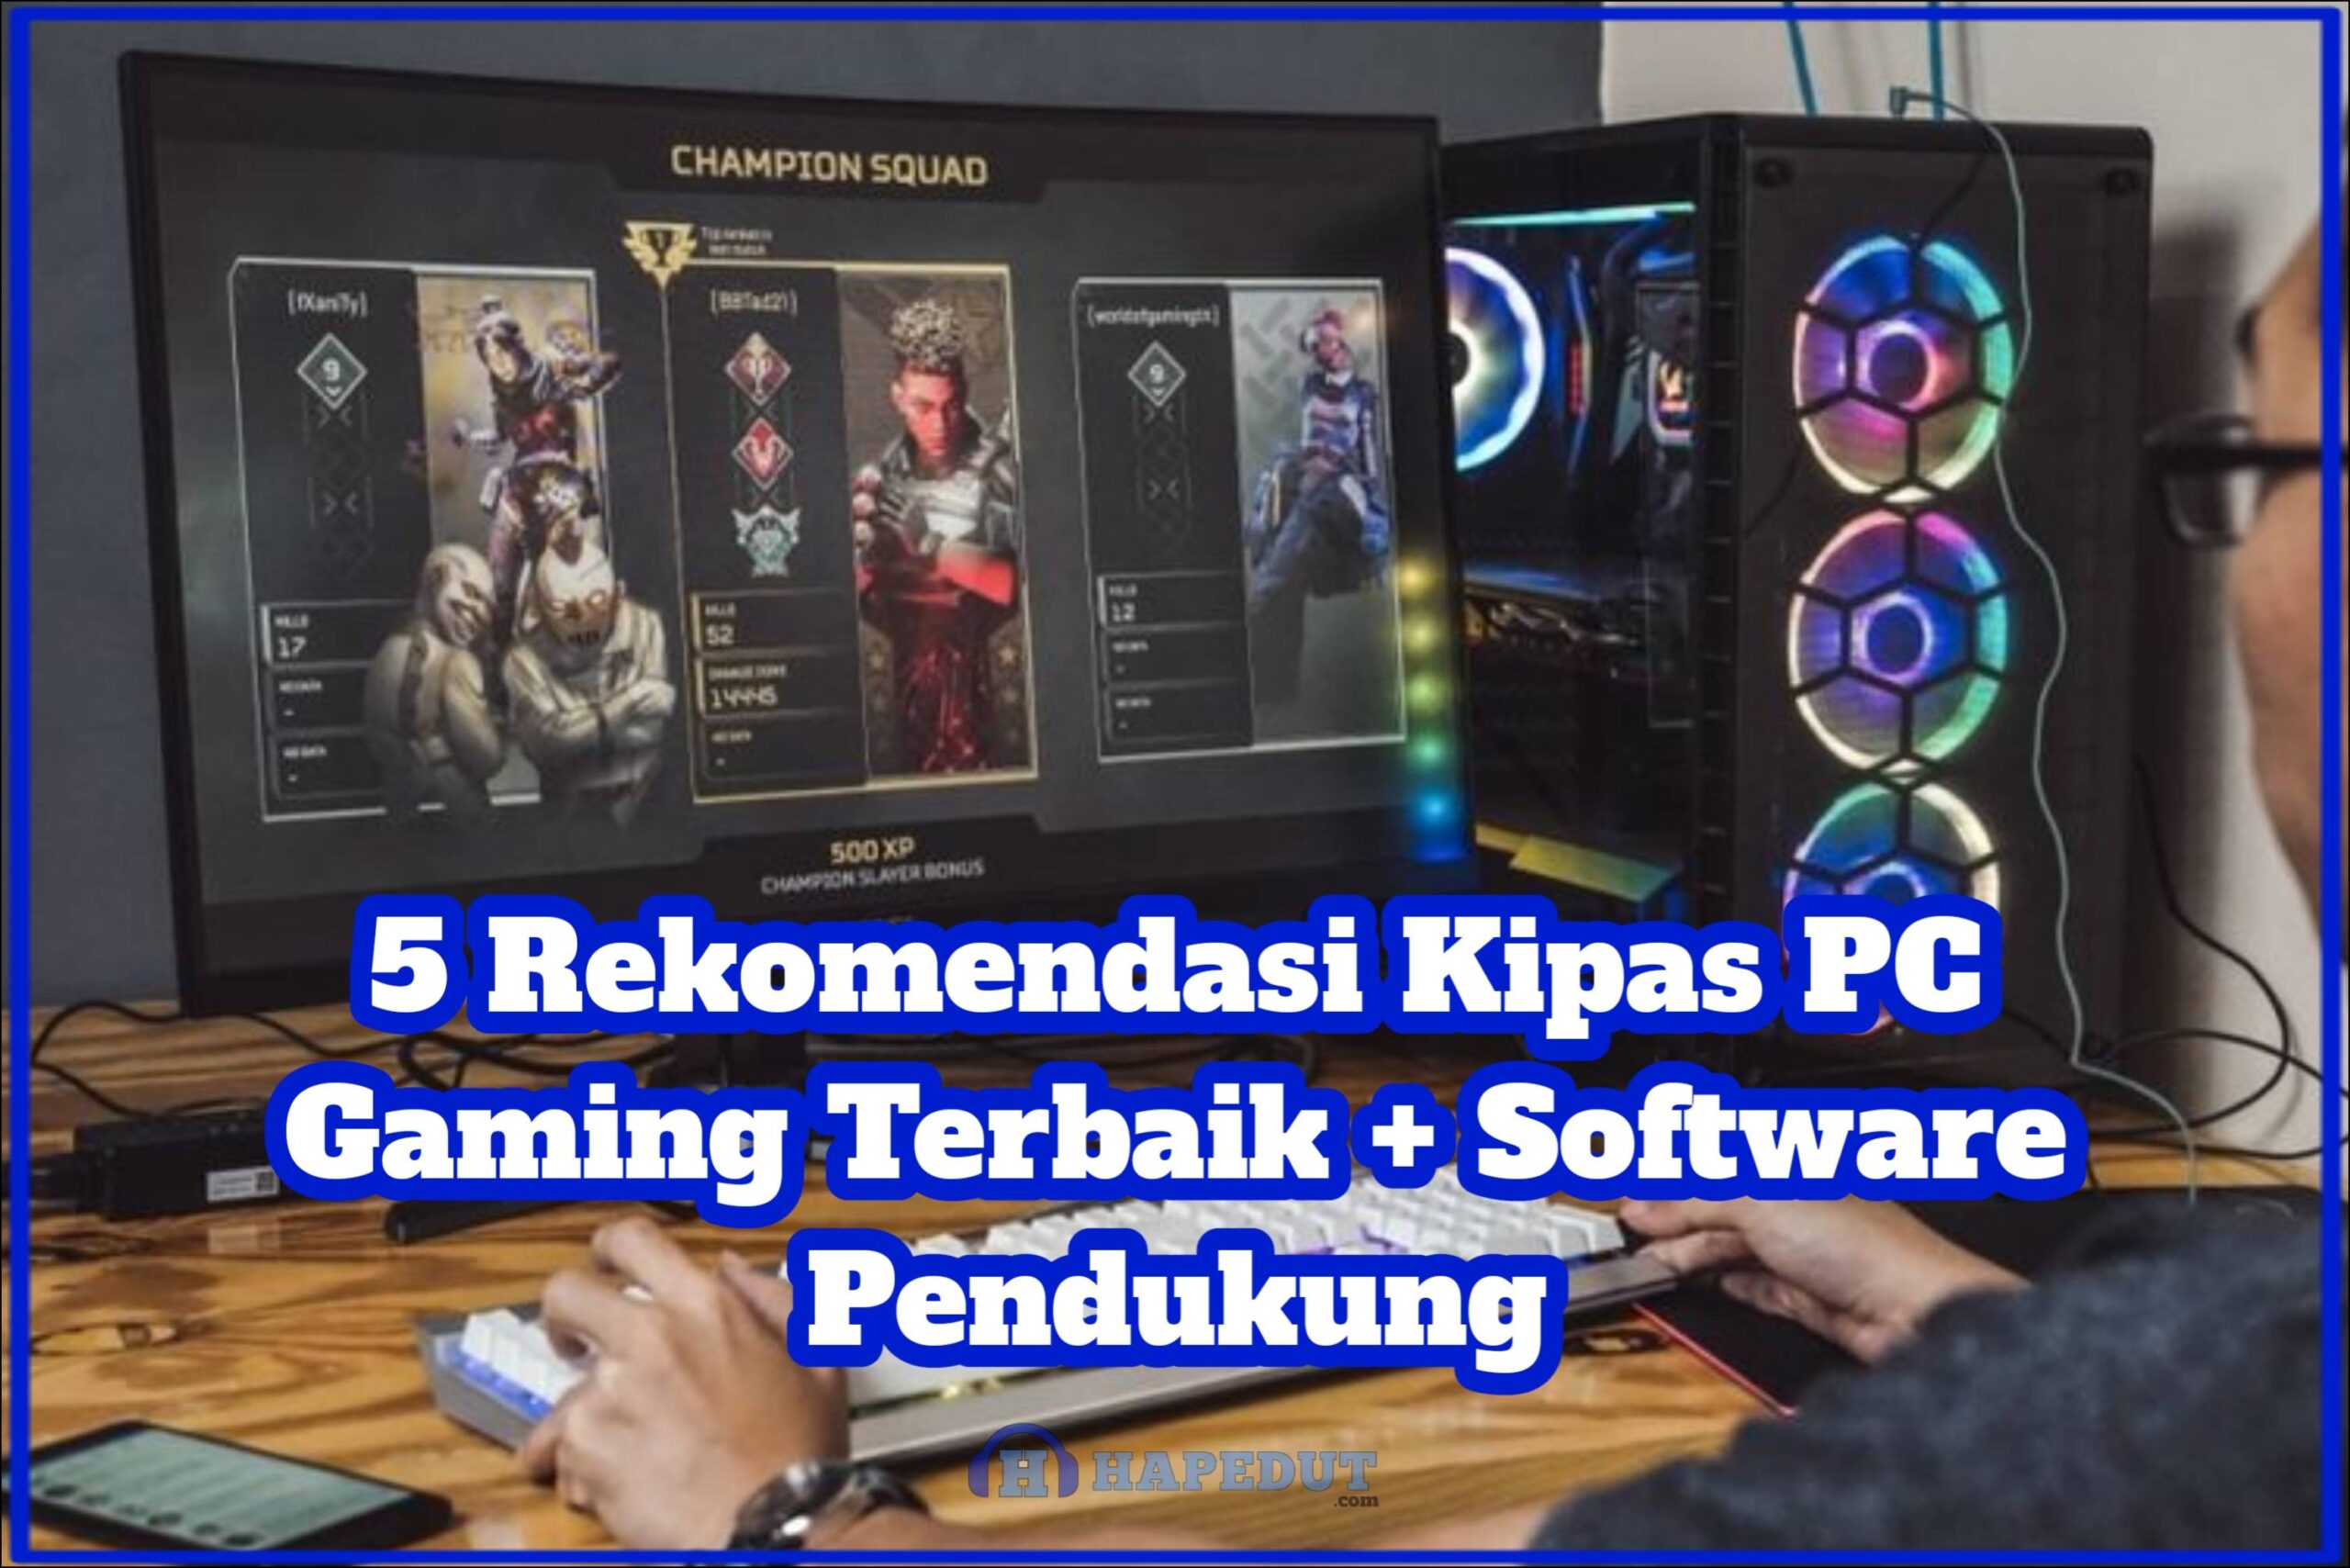 5 Rekomendasi Kipas PC Gaming Terbaik + Software Pendukung